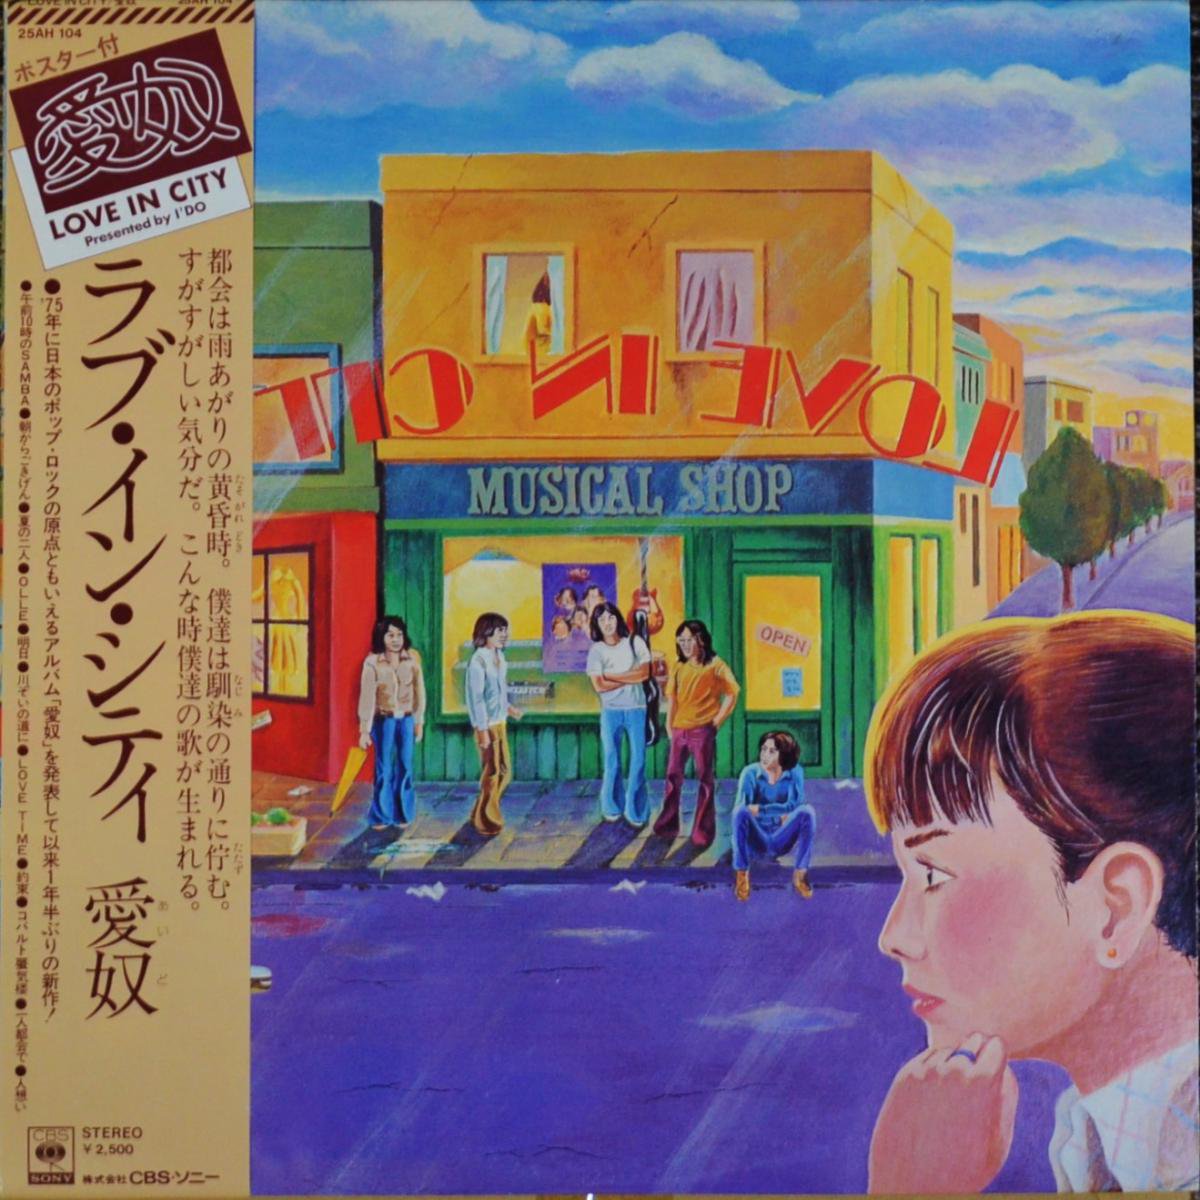 愛奴 (I'DO / 浜田省吾) / LOVE IN CITY (LP)